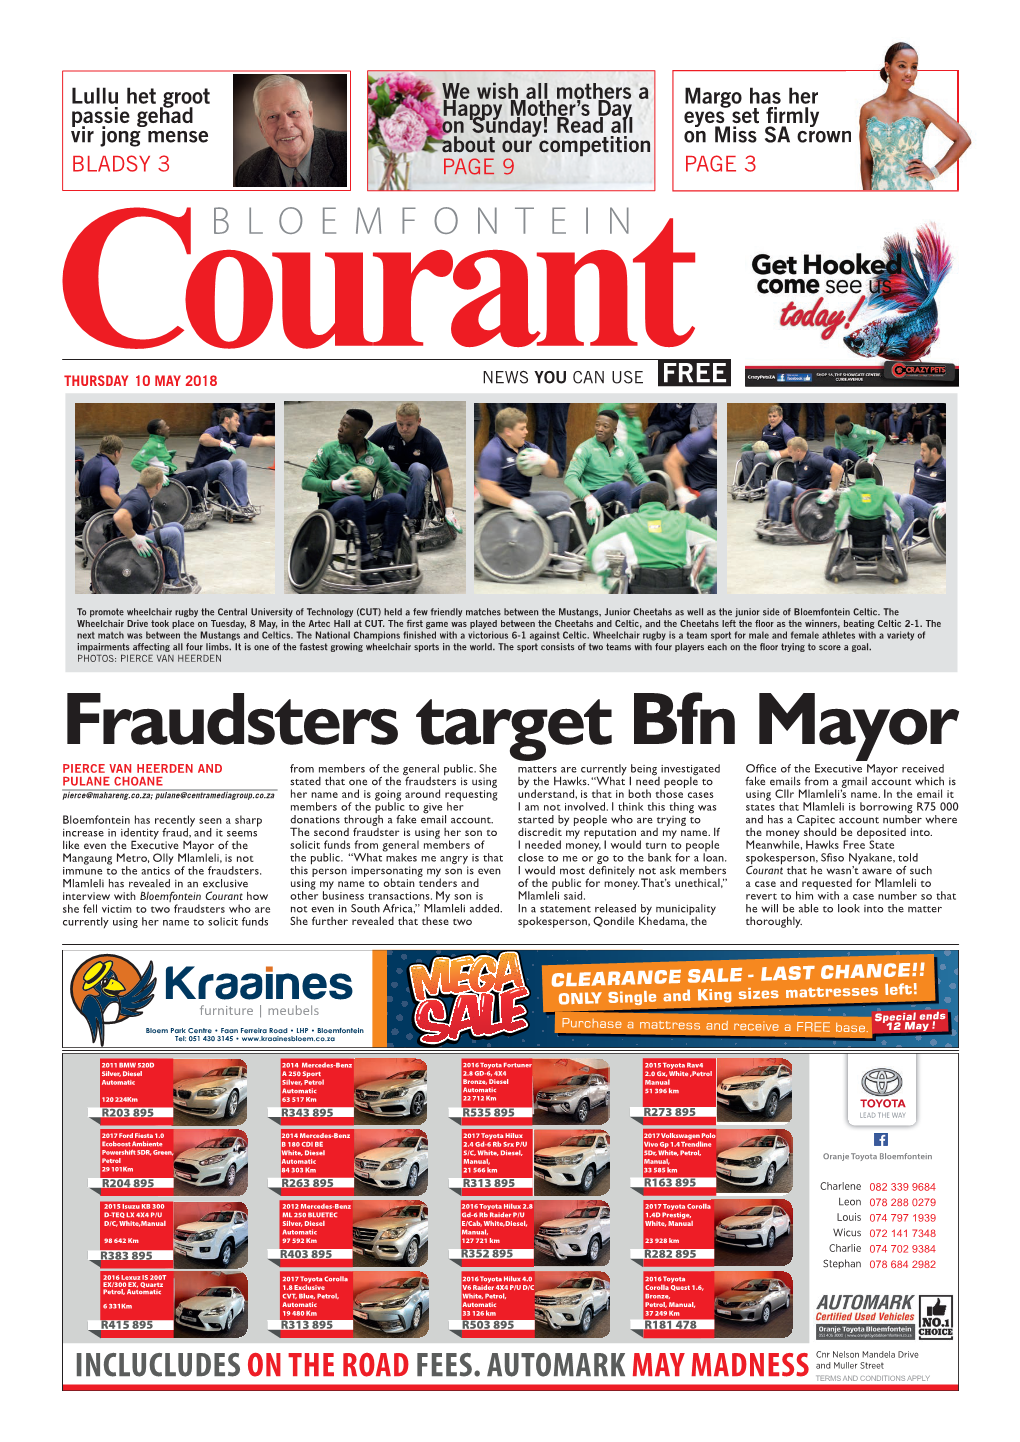 Fraudsters Target Bfn Mayor PIERCE VAN HEERDEN and from Members of the General Public